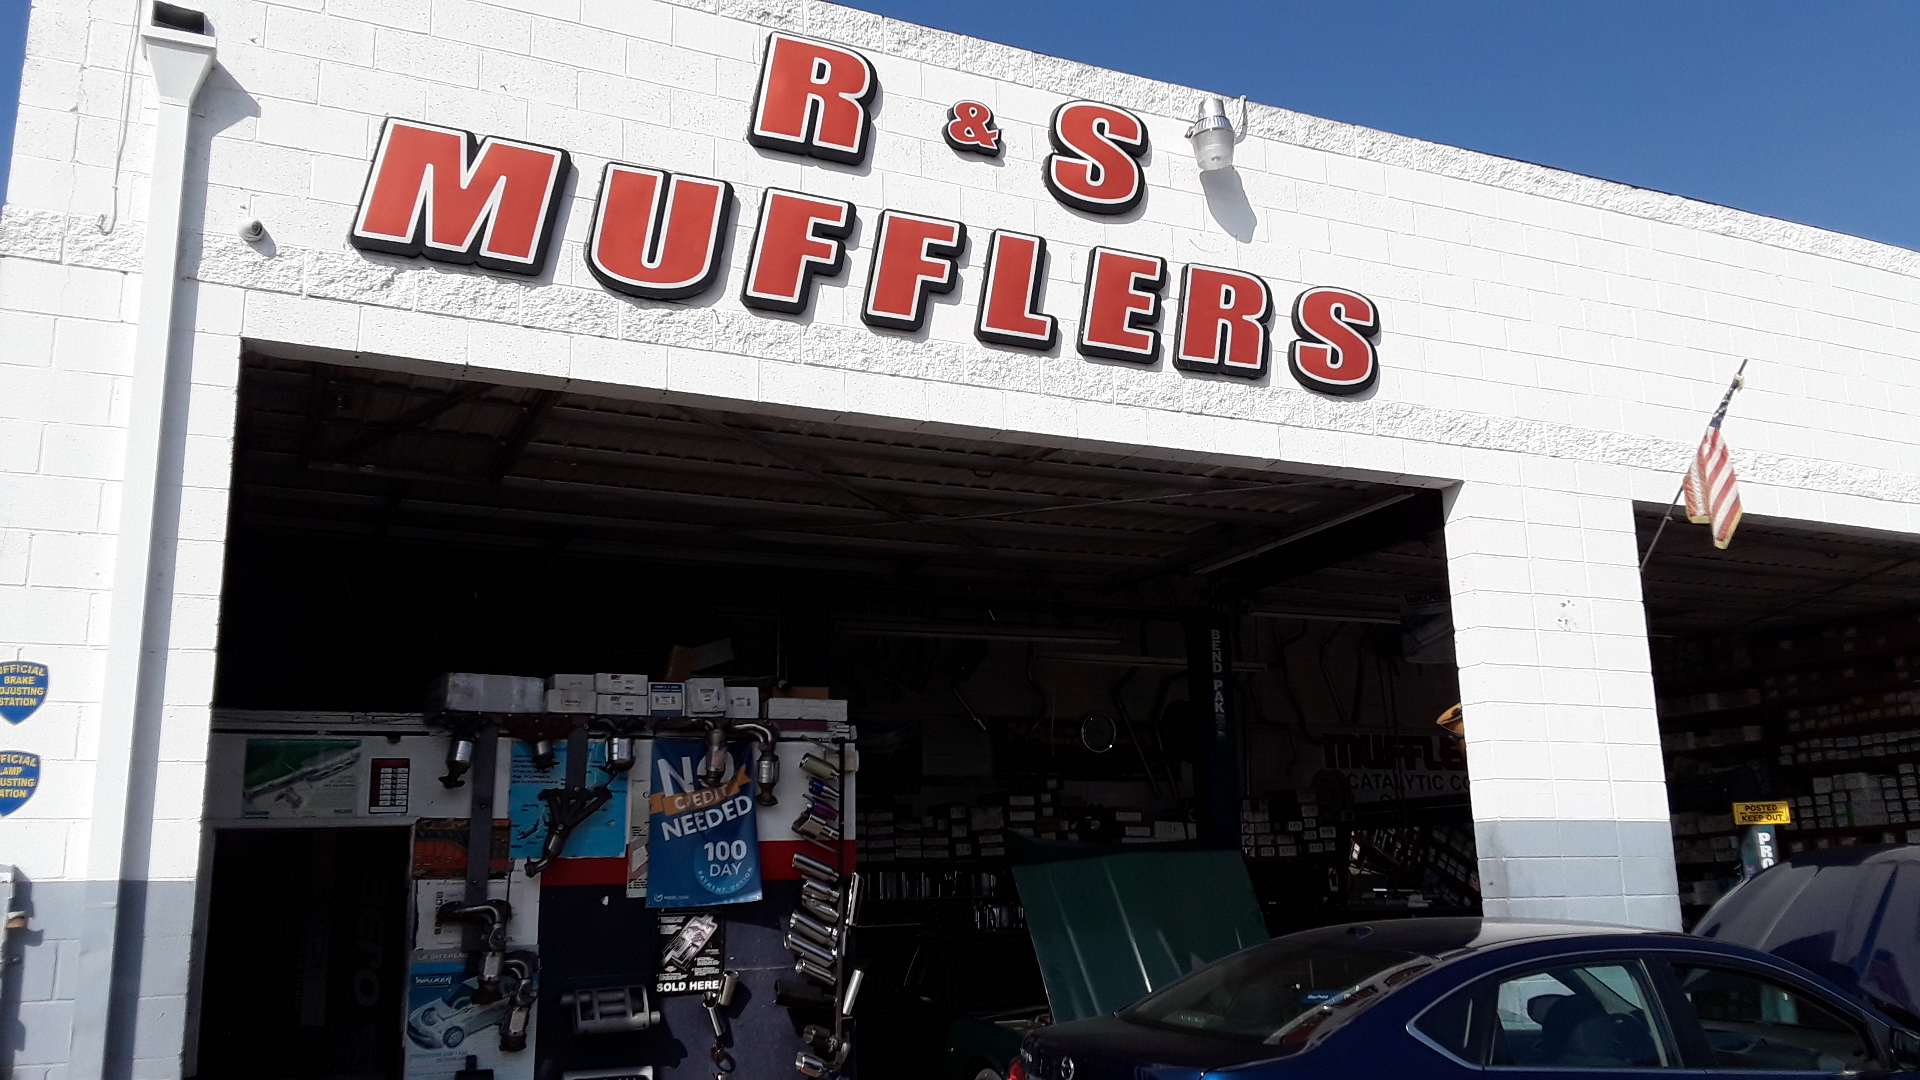 R & S Mufflers